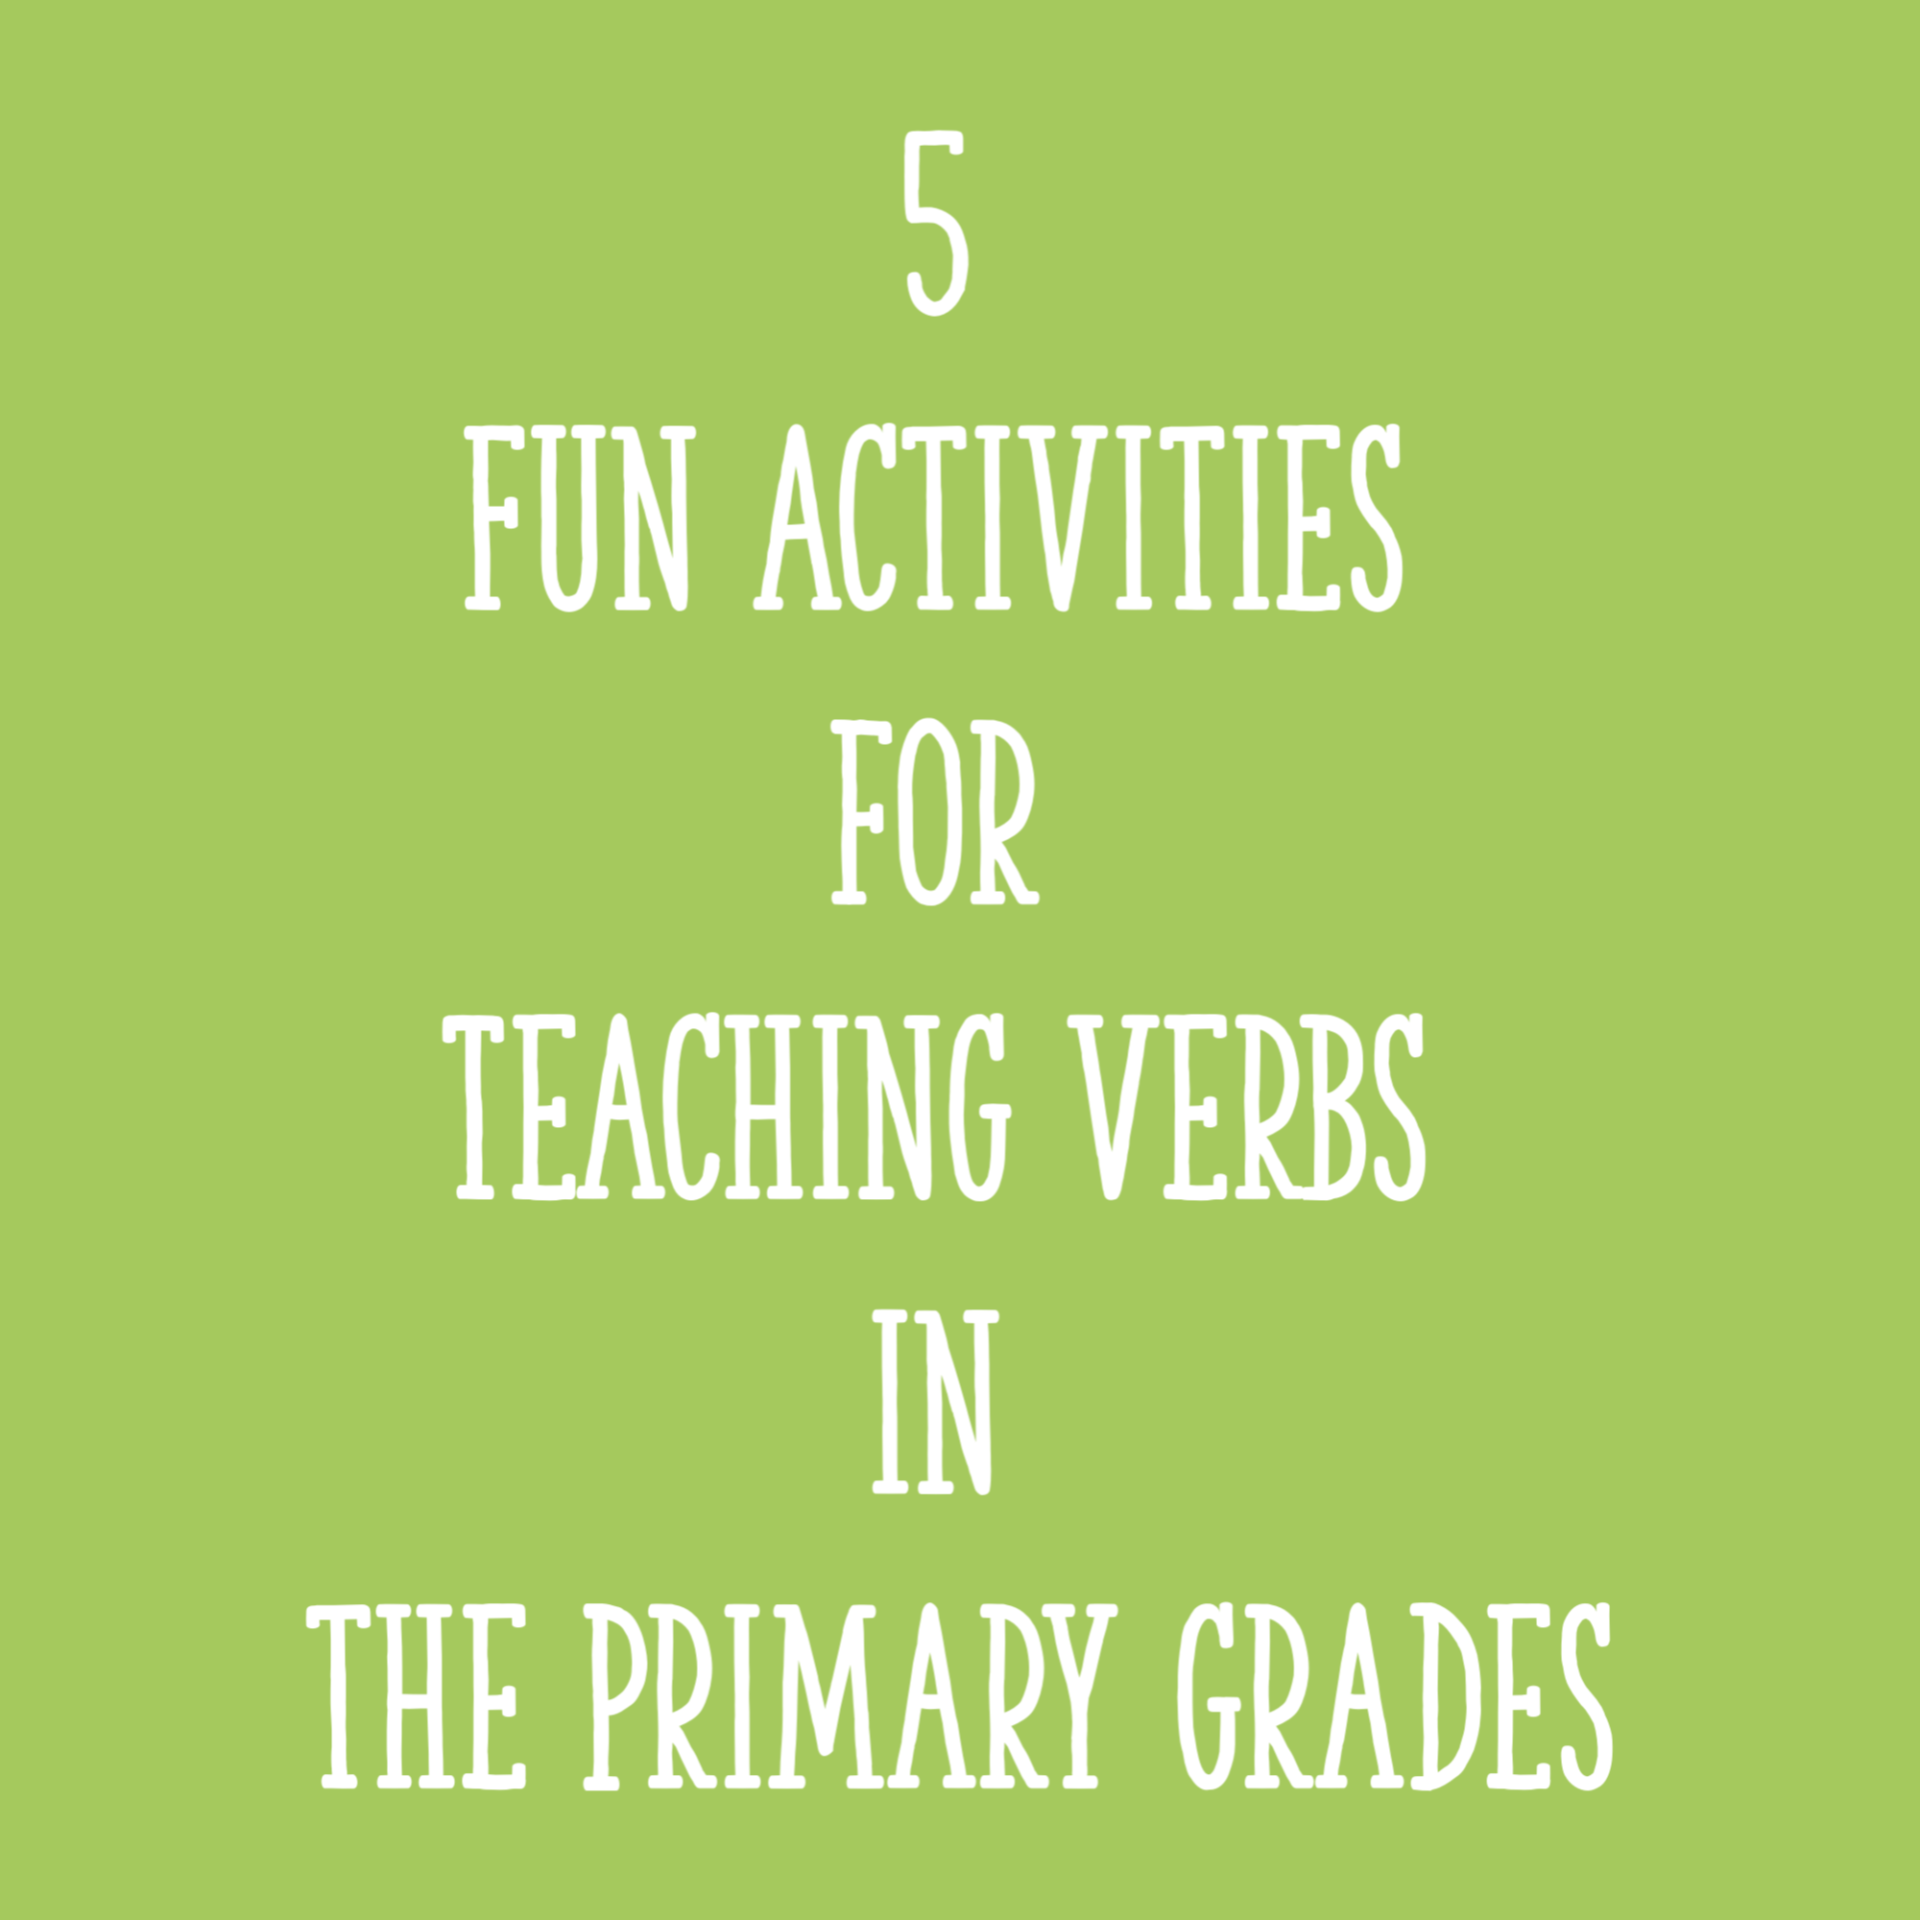 Verb 3 teach